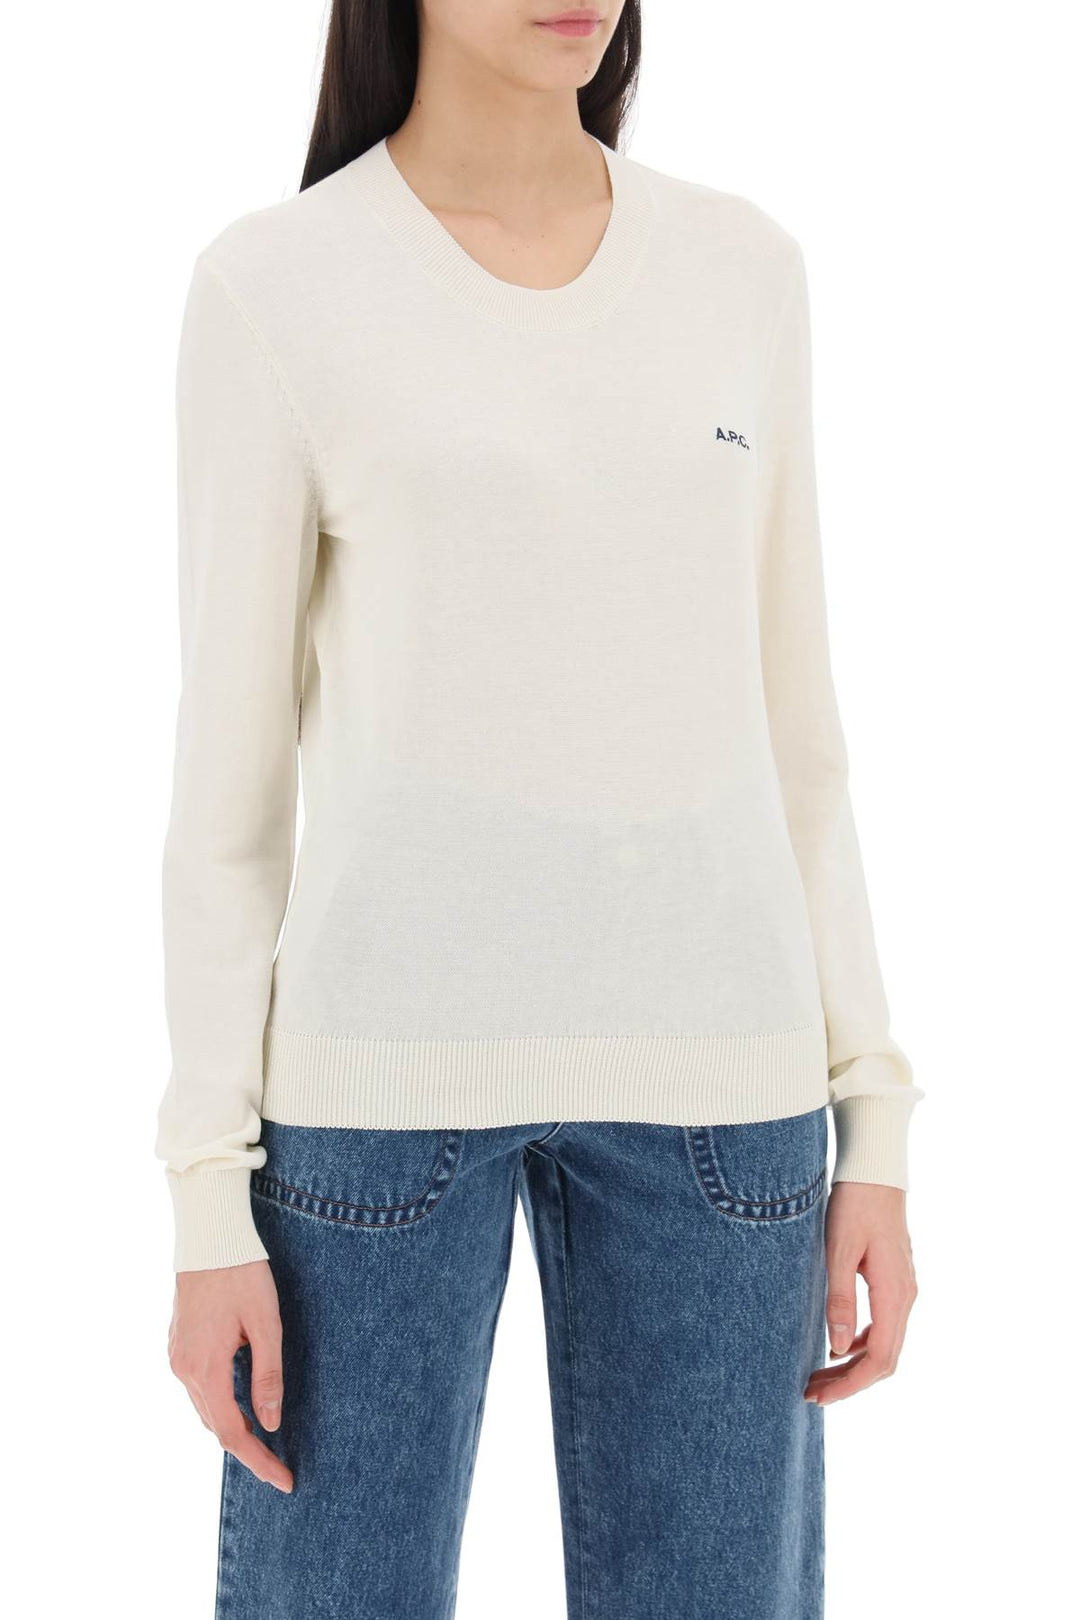 A.P.C. Cotton Victoria Pullover Sweater   Bianco